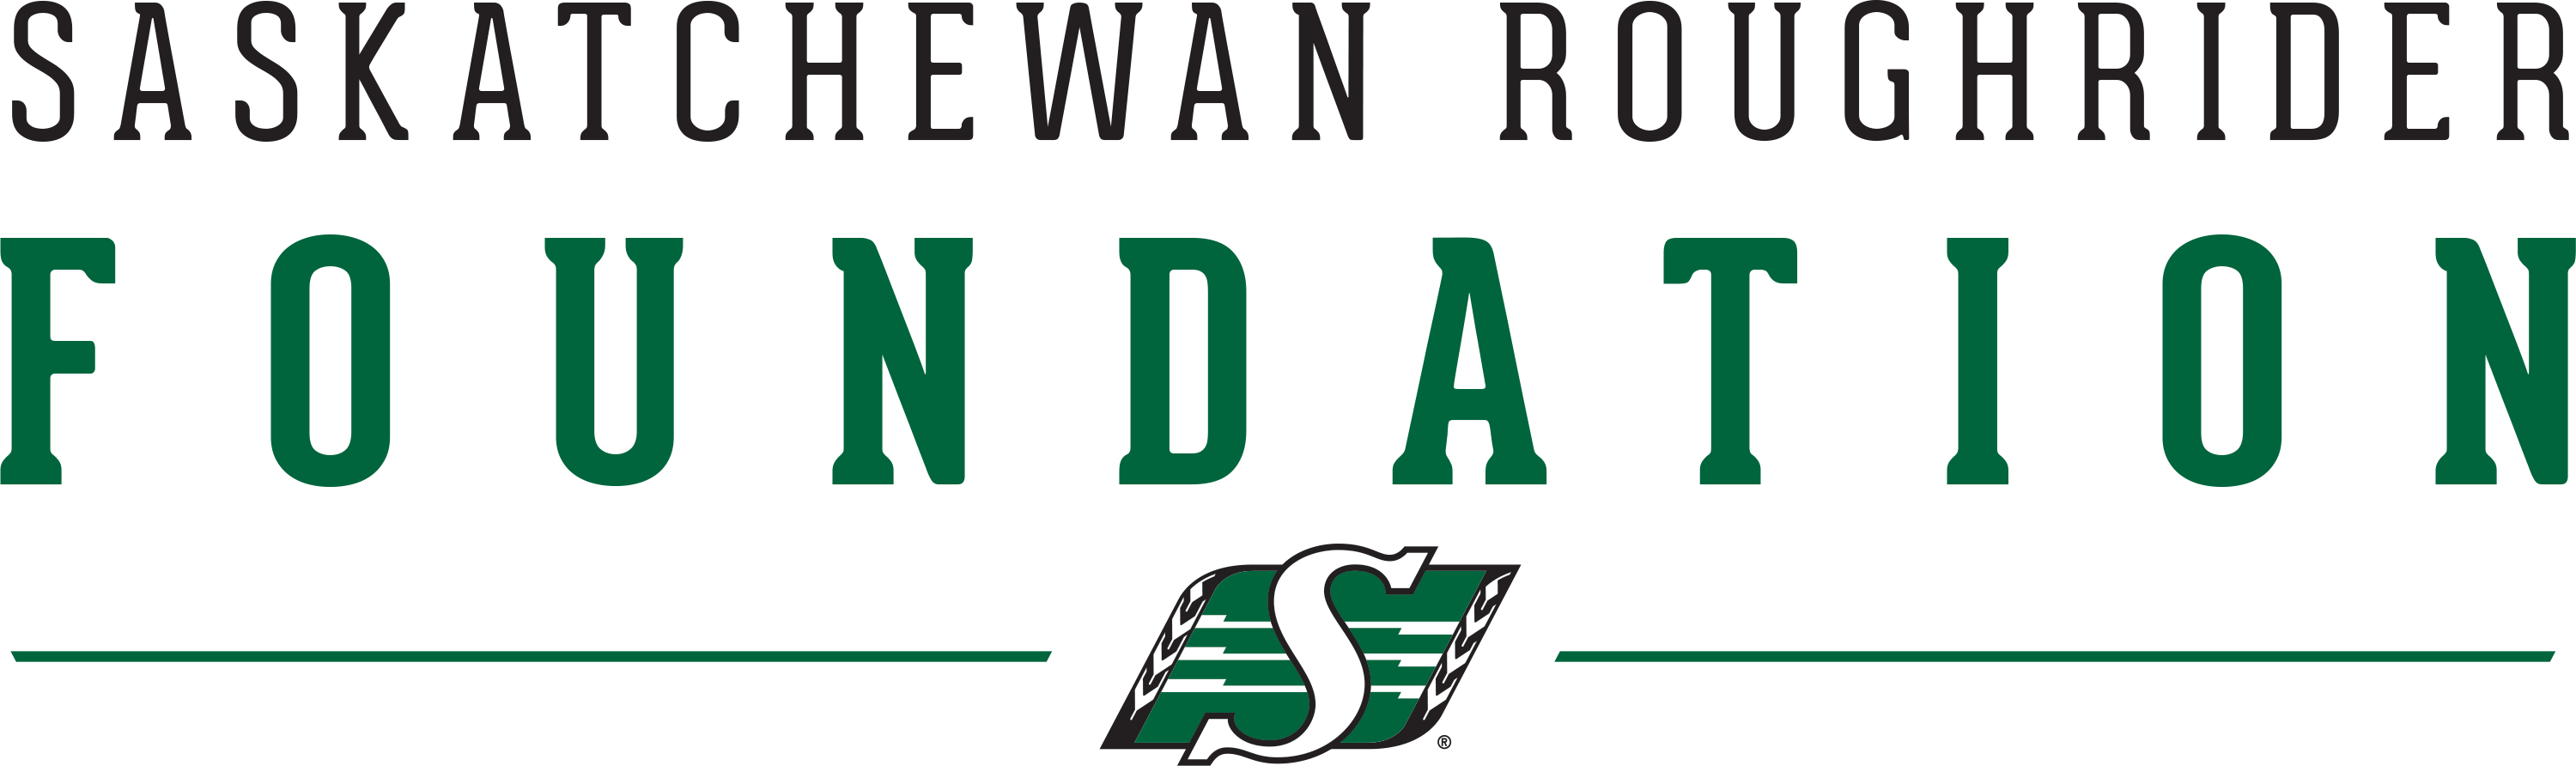 Saskatchewan Roughrider Foundation logo